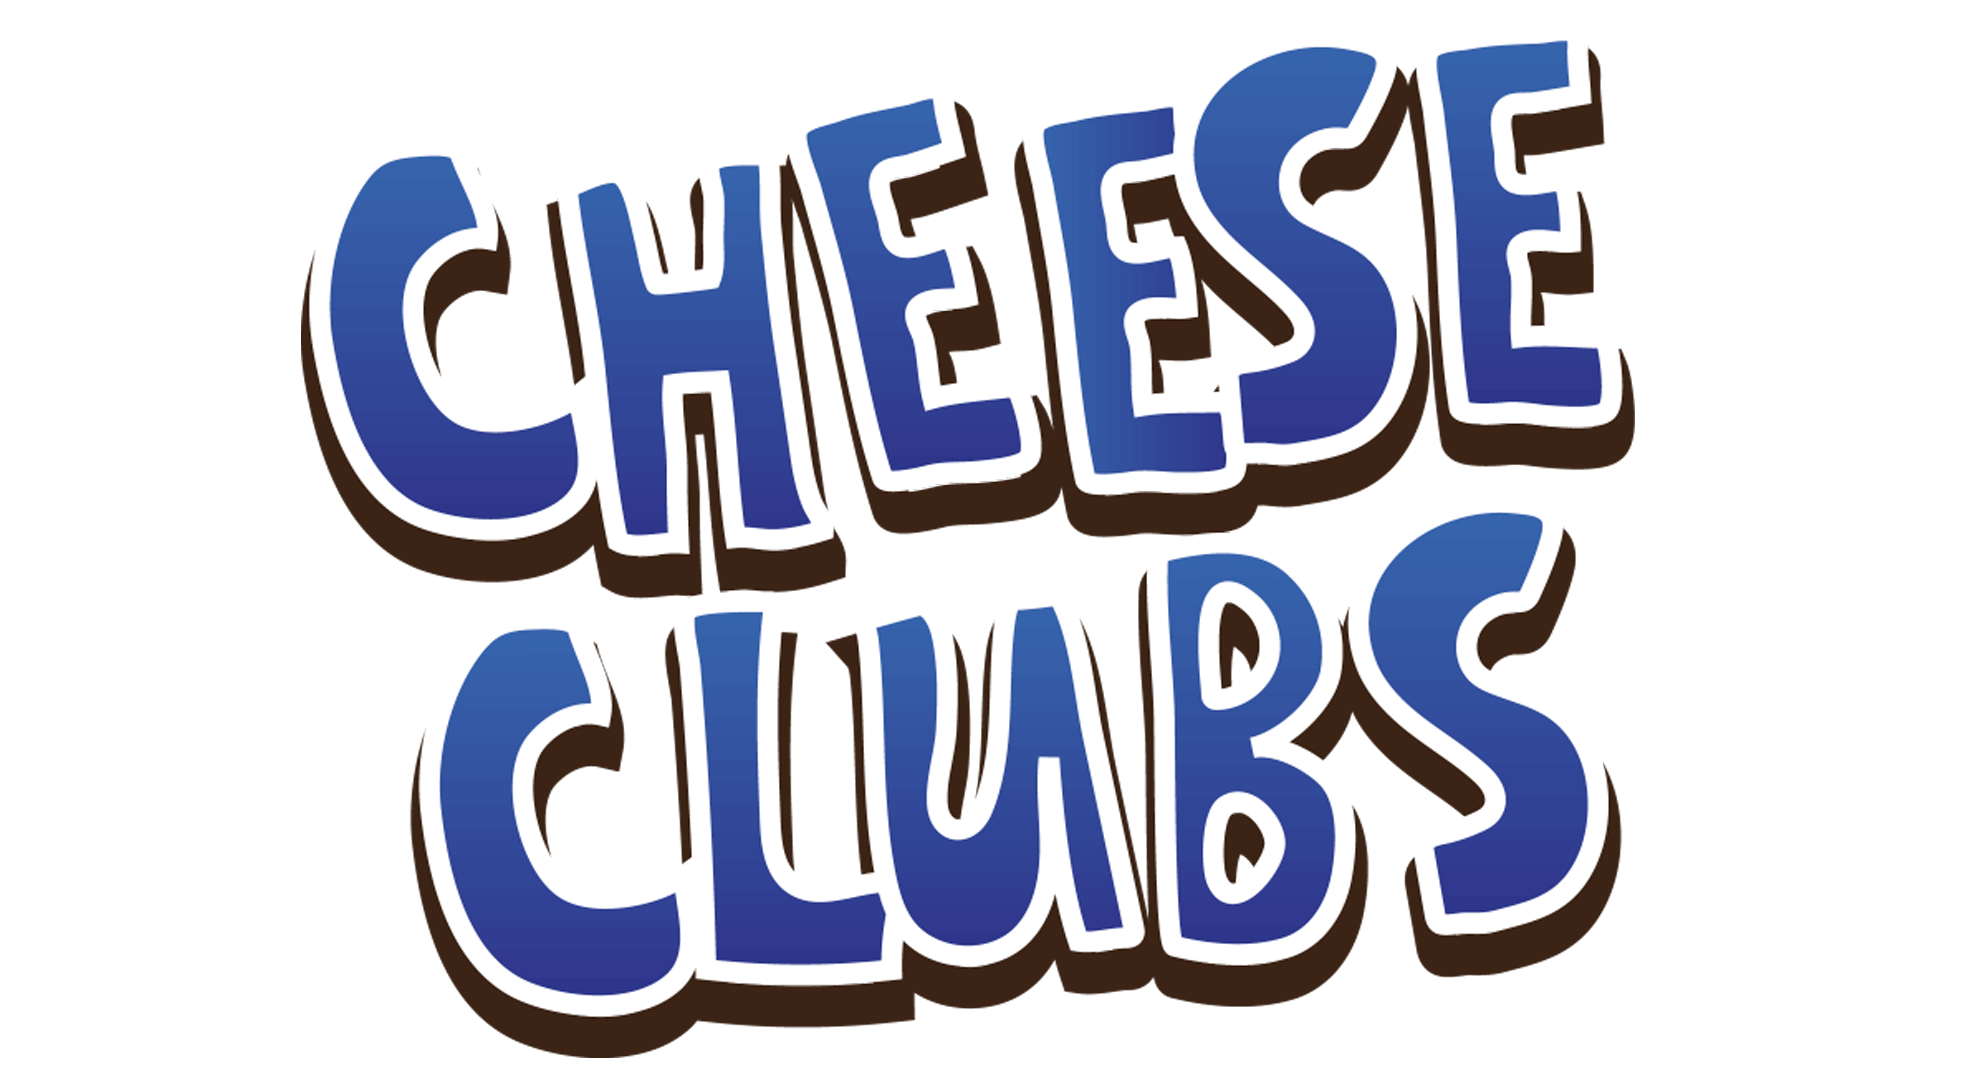 cheese club